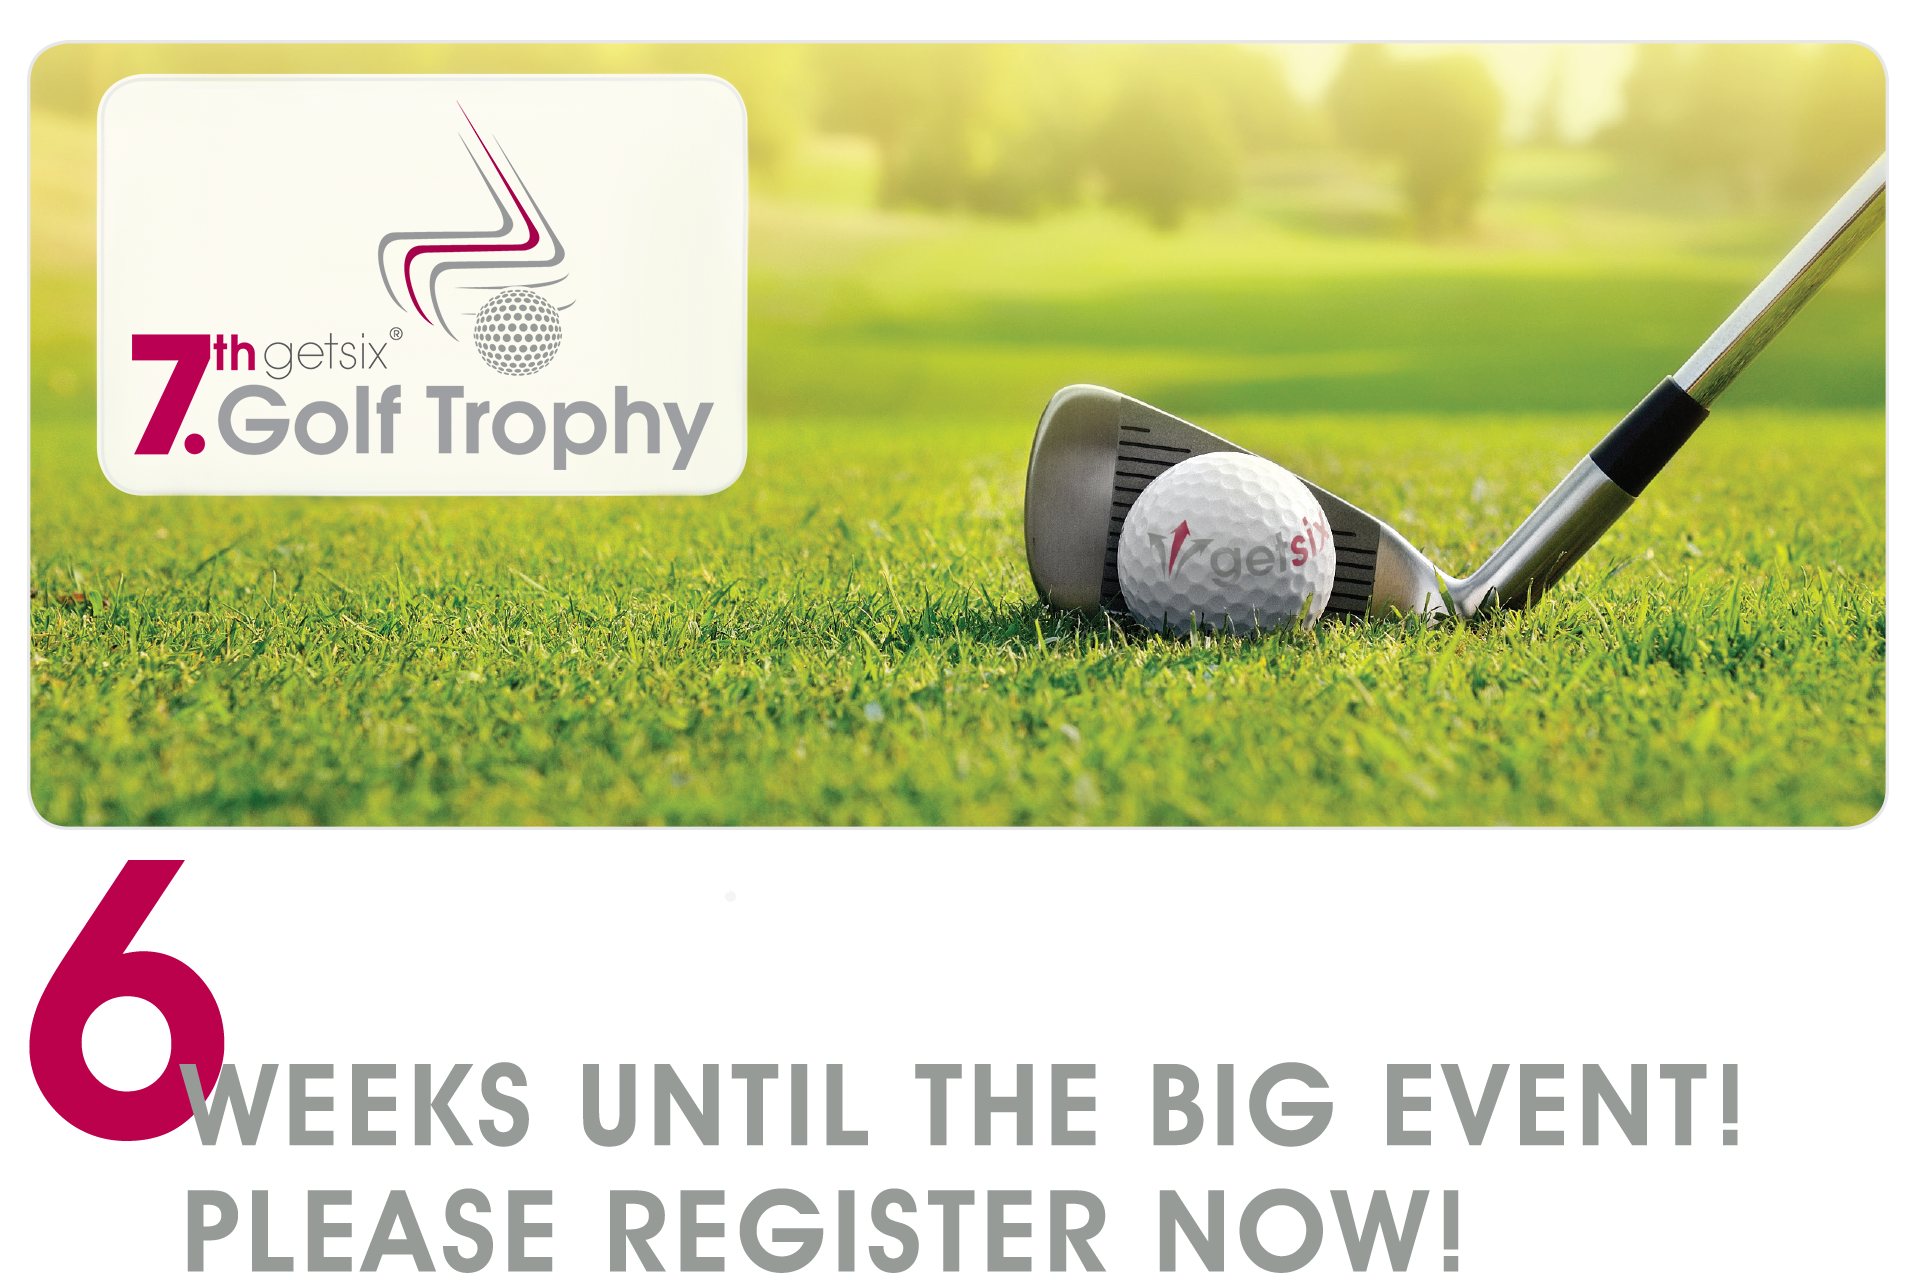 6 weeks until 7th getsix Golf Trophy